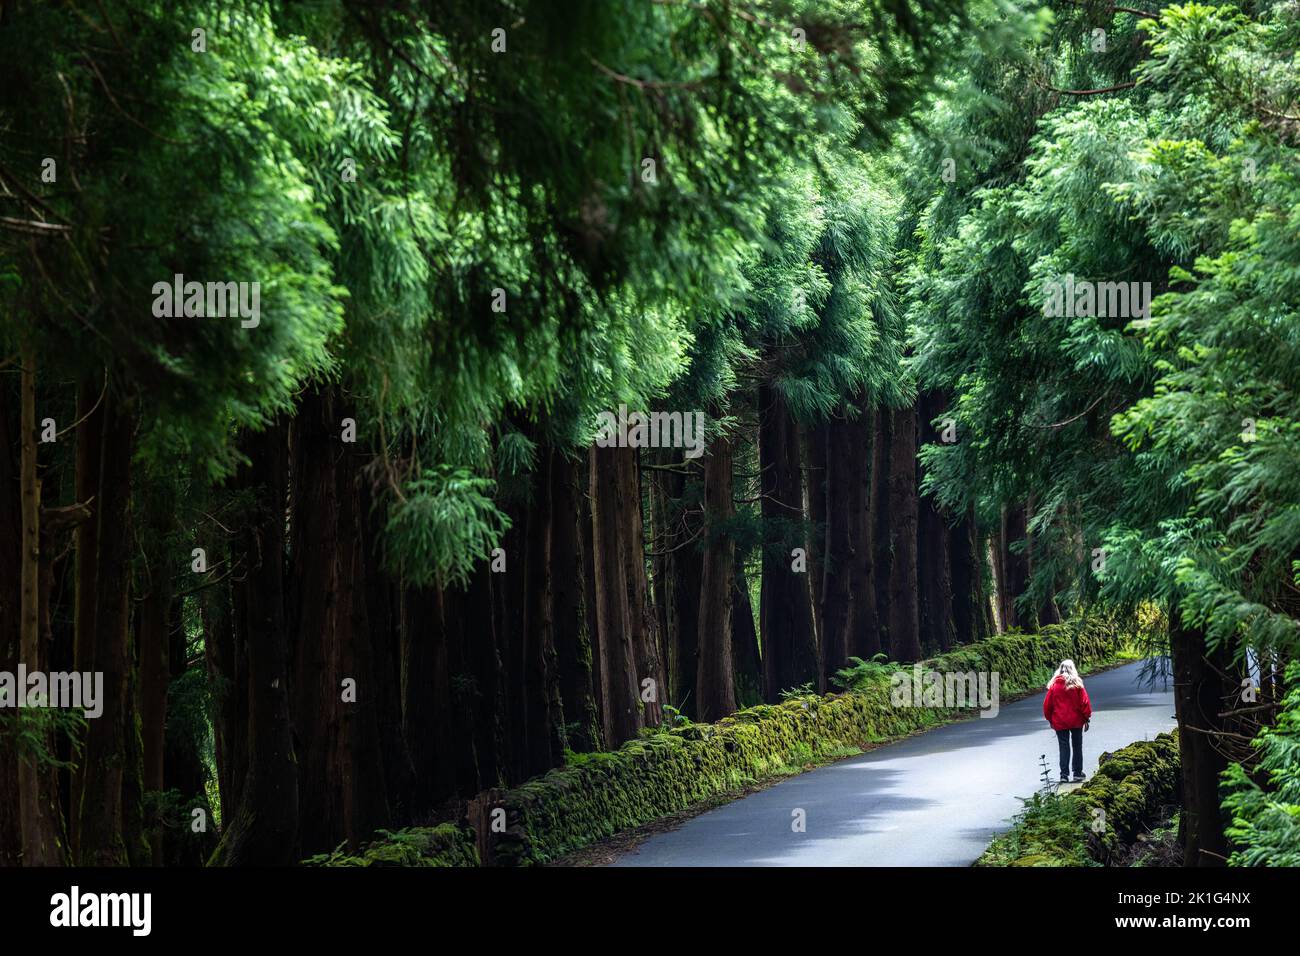 Une femme passe devant des cèdres japonais géants dans le parc naturel Reserva Florestal parcial da Serra de S. Barbara e dos Misterios Negros à Terceira, Açores, Portugal. Plus de 22 pour cent des terres de l'île de Terceira sont mises de côté comme réserves naturelles. Banque D'Images